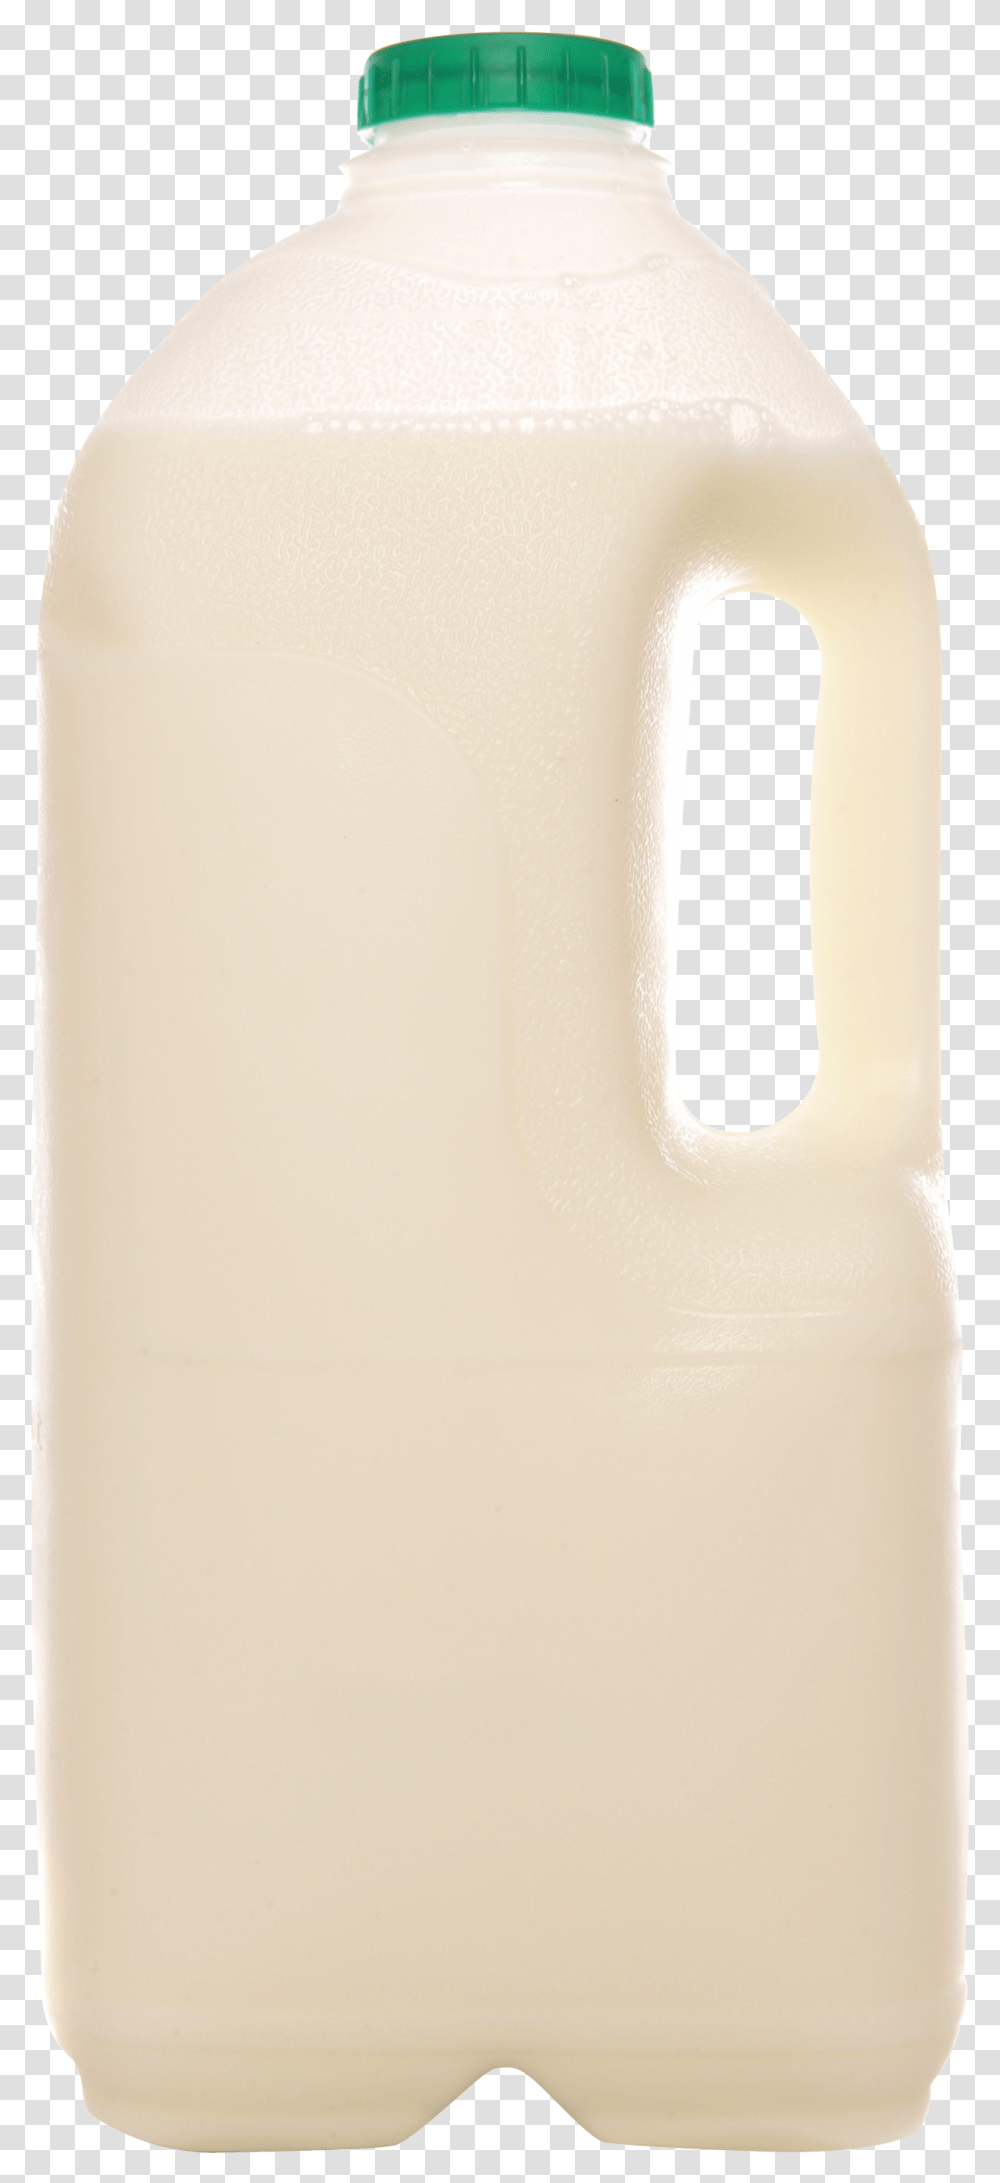 Milk Images Plastic Bottle, Beverage, Drink, Dairy Transparent Png